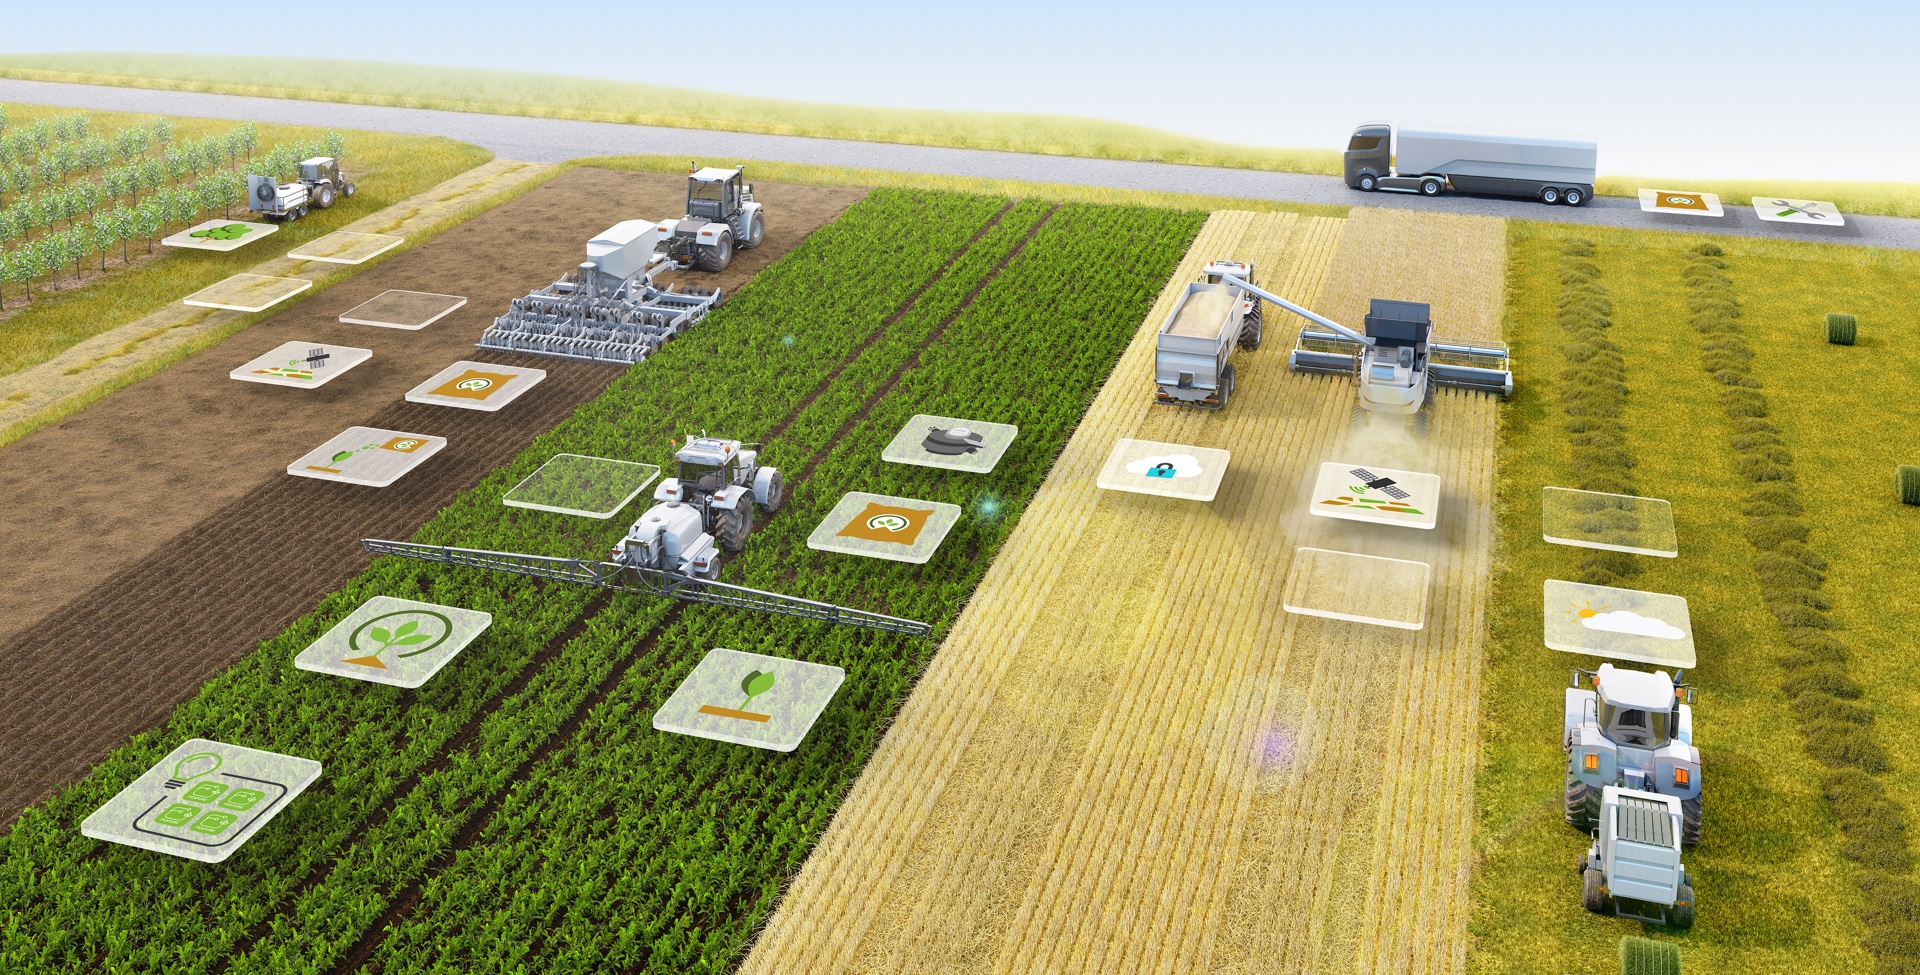 Объект сельскохозяйственного производства. Технологии в сельском хозяйстве. Сельскохозяйственный комплекс. Современные технологии в сельском хозяйстве. Инновационные технологии в сельском хозяйстве.